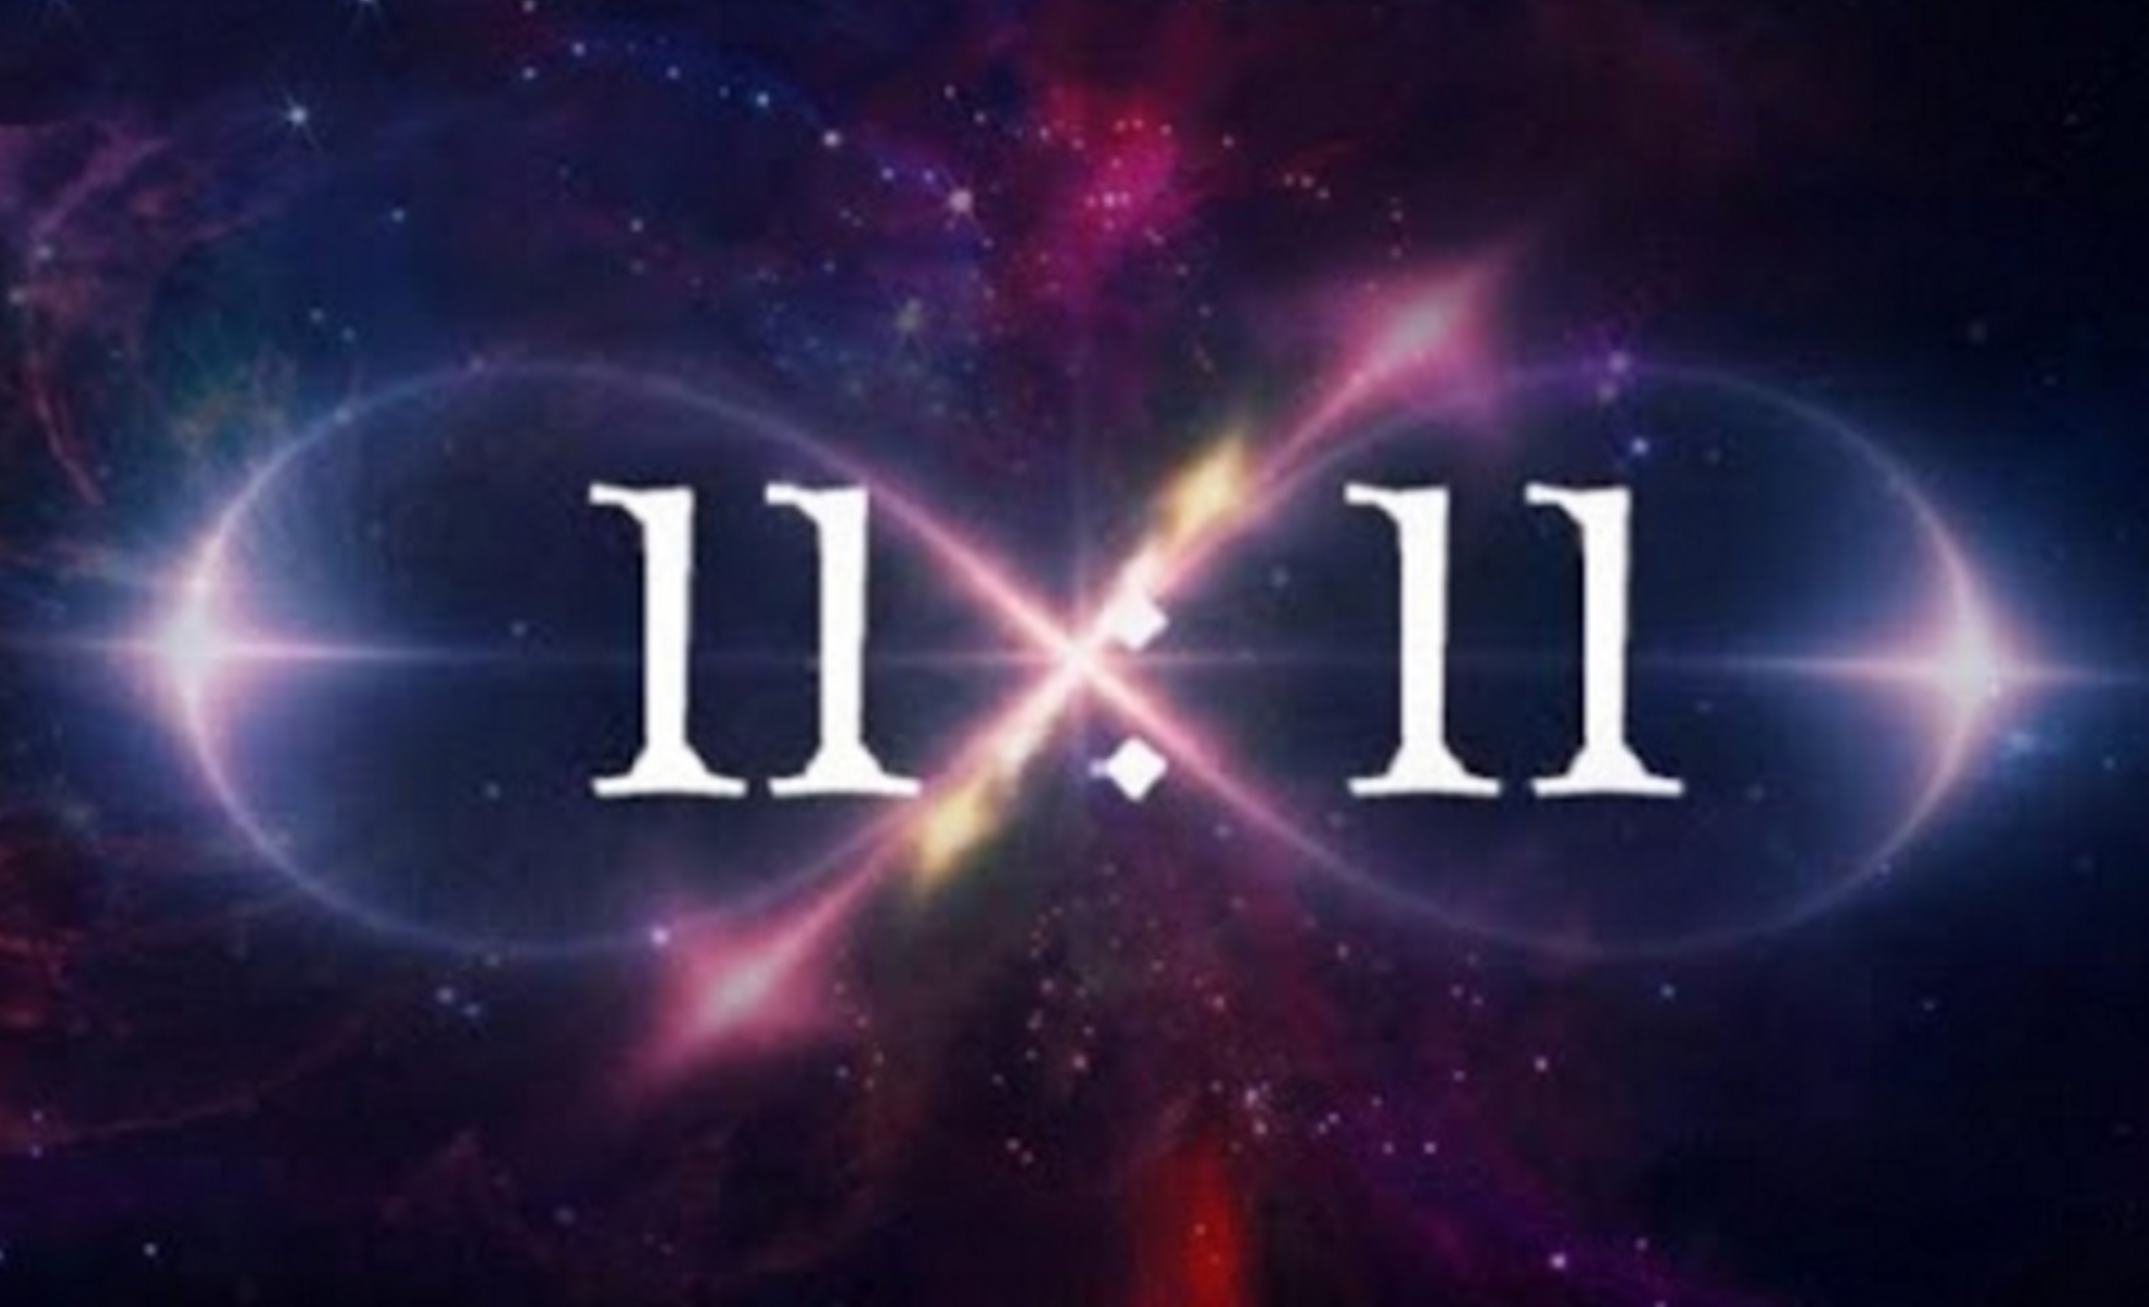 Тег 11 11. Магия числа 11. 11:11 Нумерология. 11.11 Картинки. 11 11 Магия чисел.